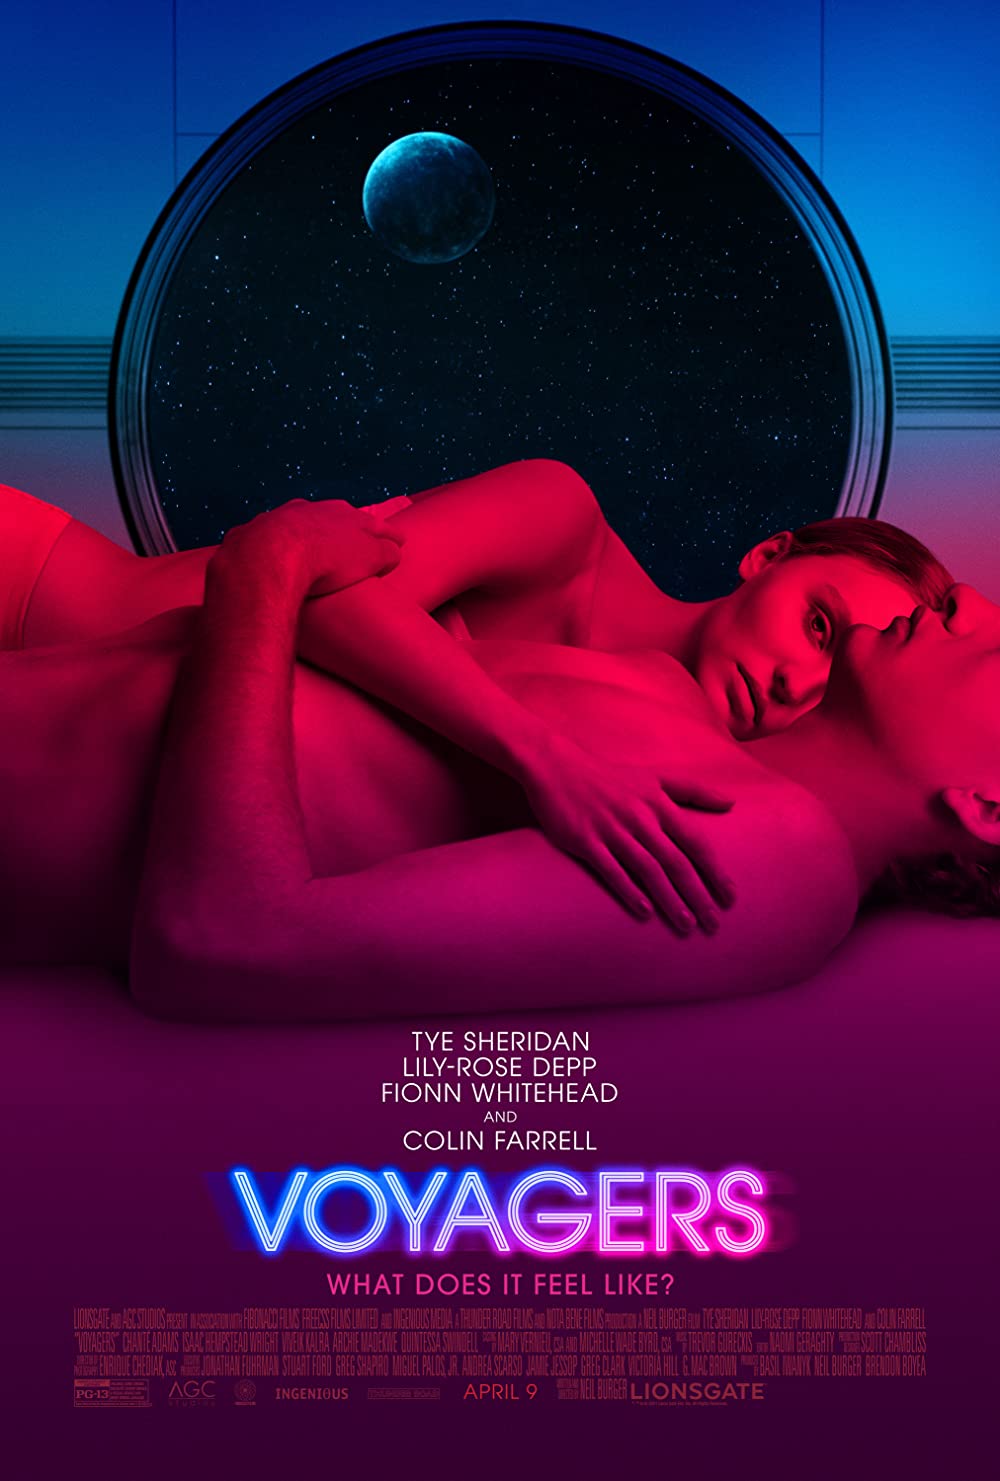 Filmbeschreibung zu Voyagers